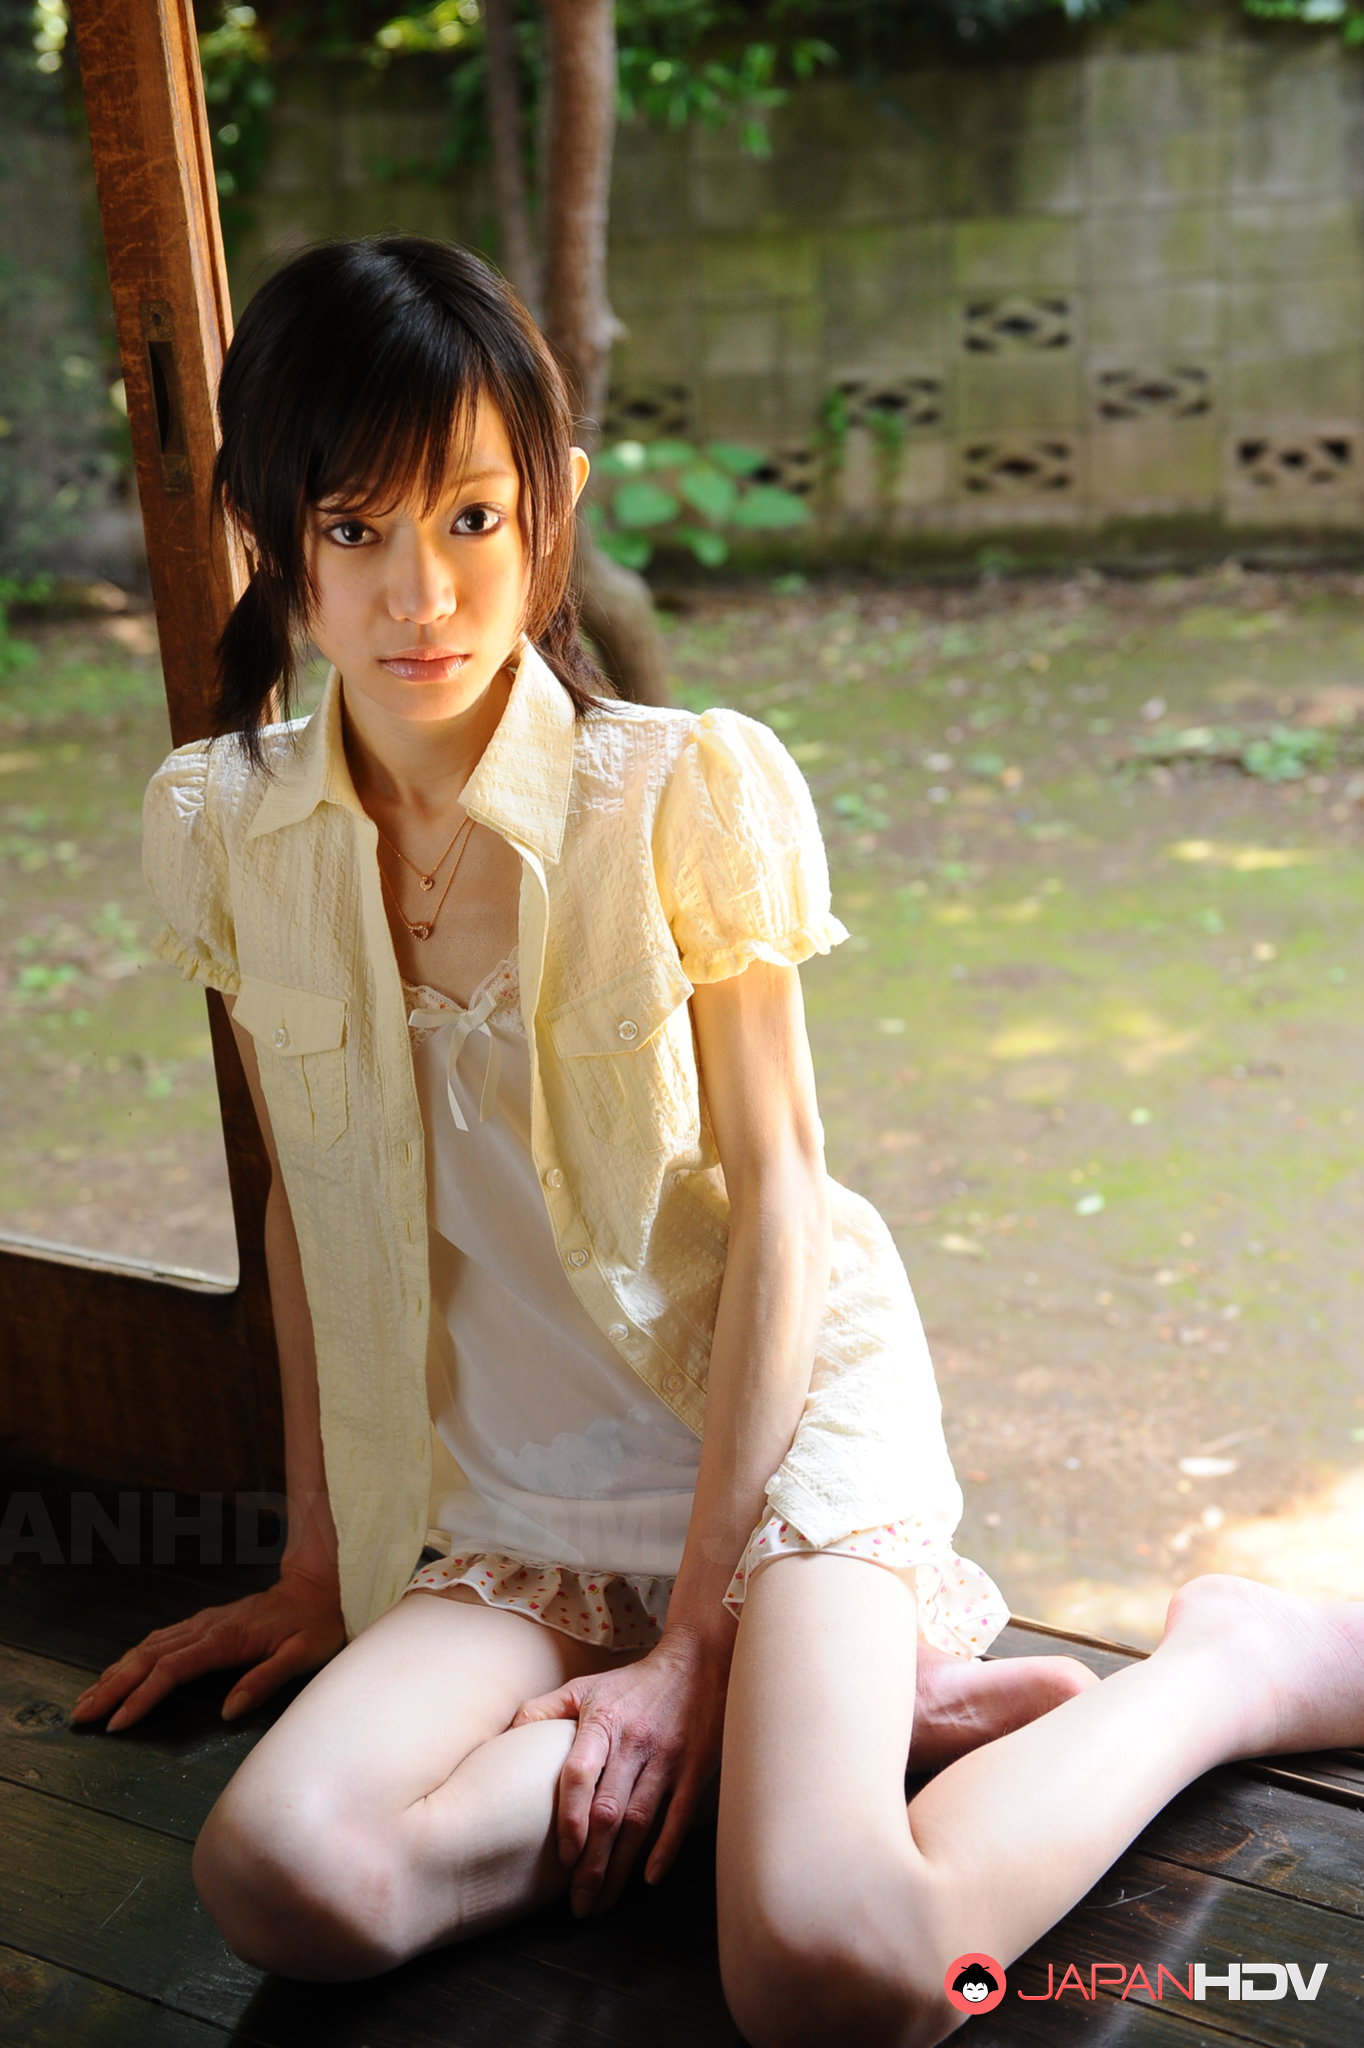 Skinny japanese girl posing